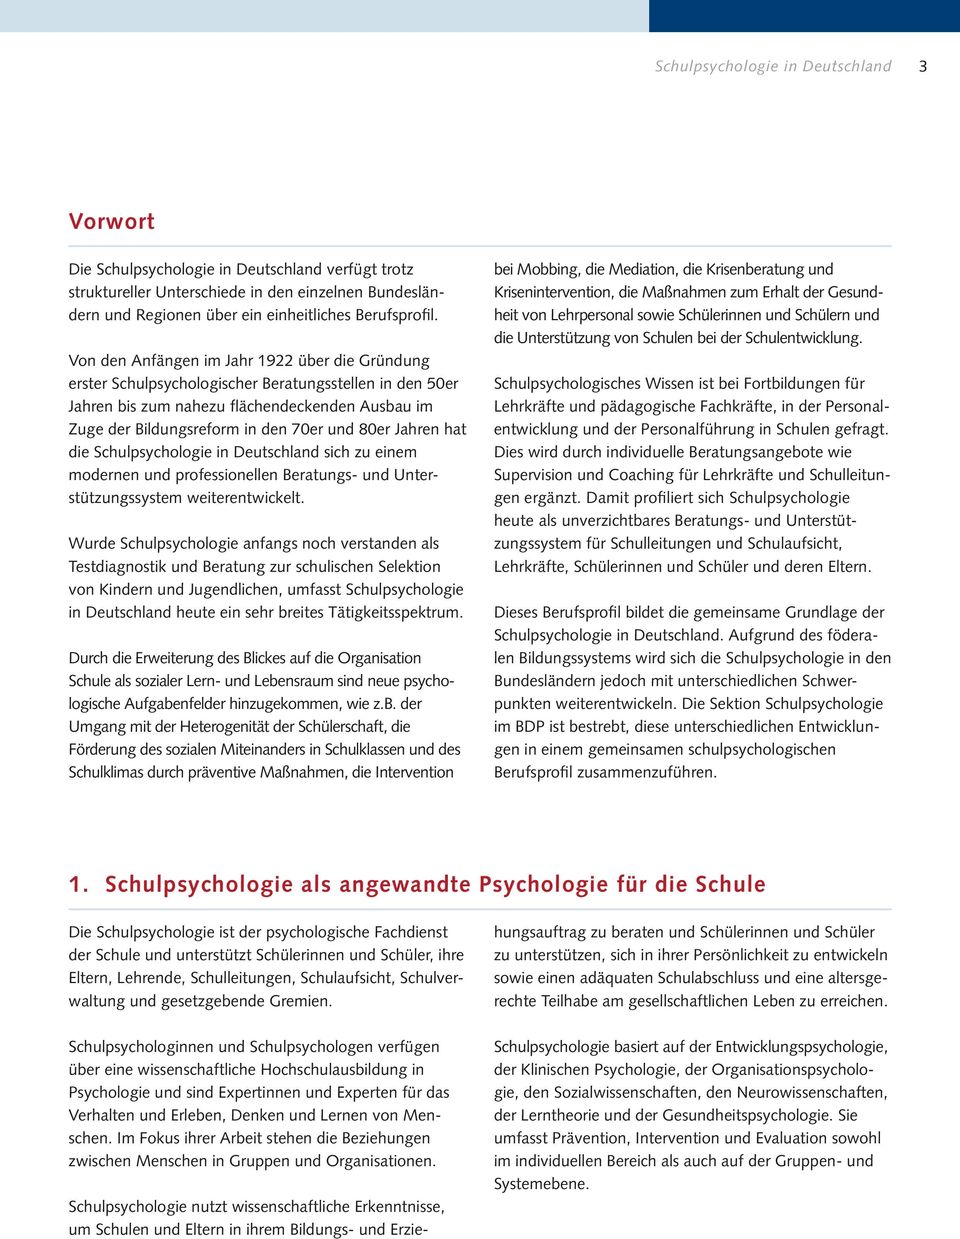 Jahren hat die Schulpsychologie in Deutschland sich zu einem modernen und professionellen Beratungs- und Unterstützungssystem weiterentwickelt.